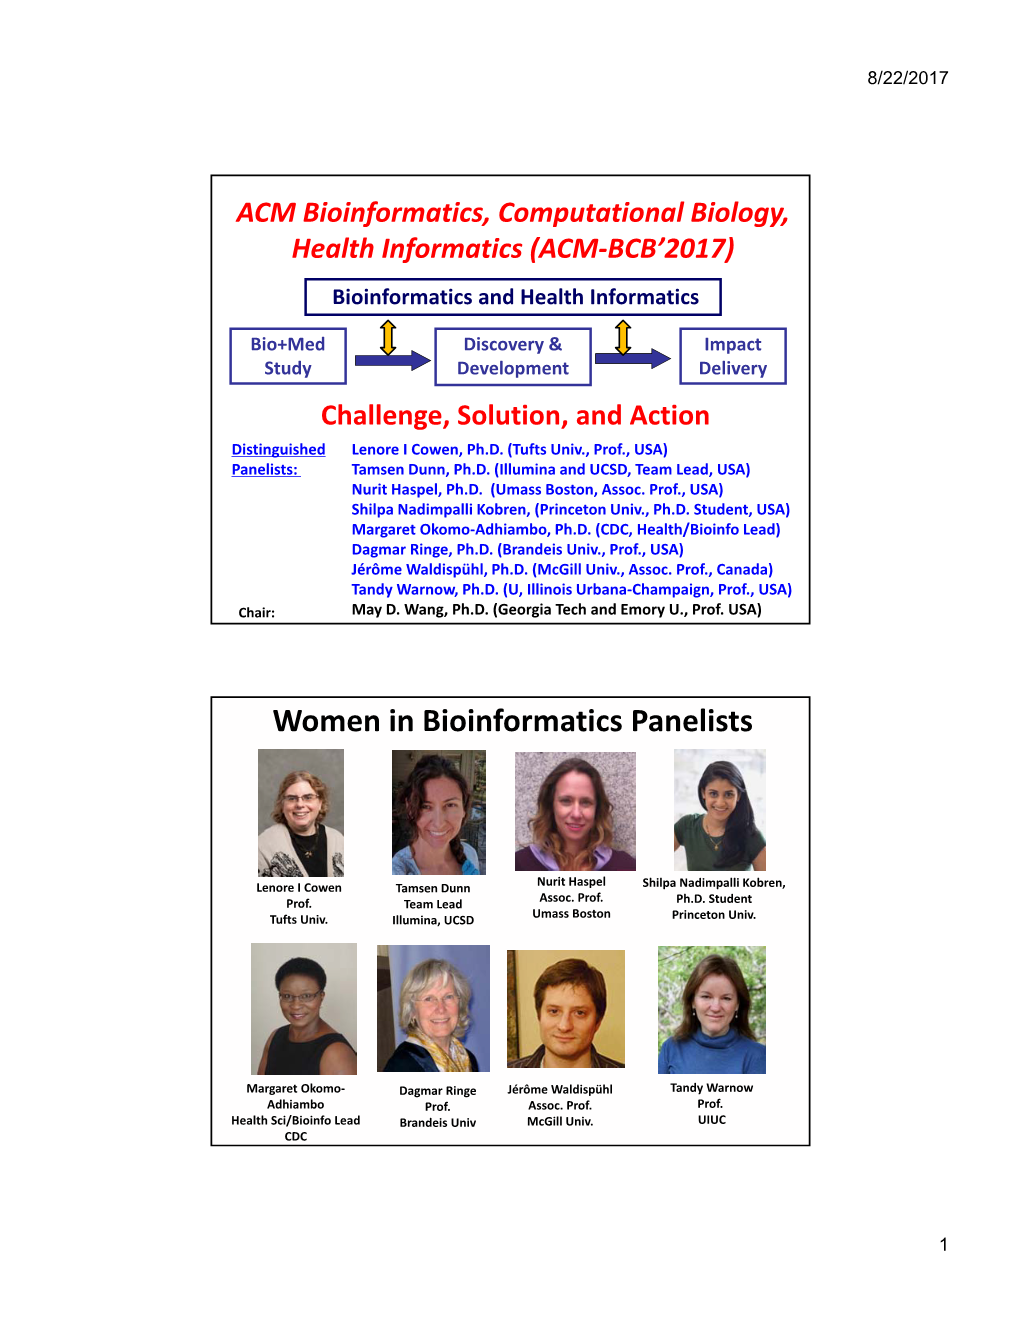 Women in Bioinformatics Panelists